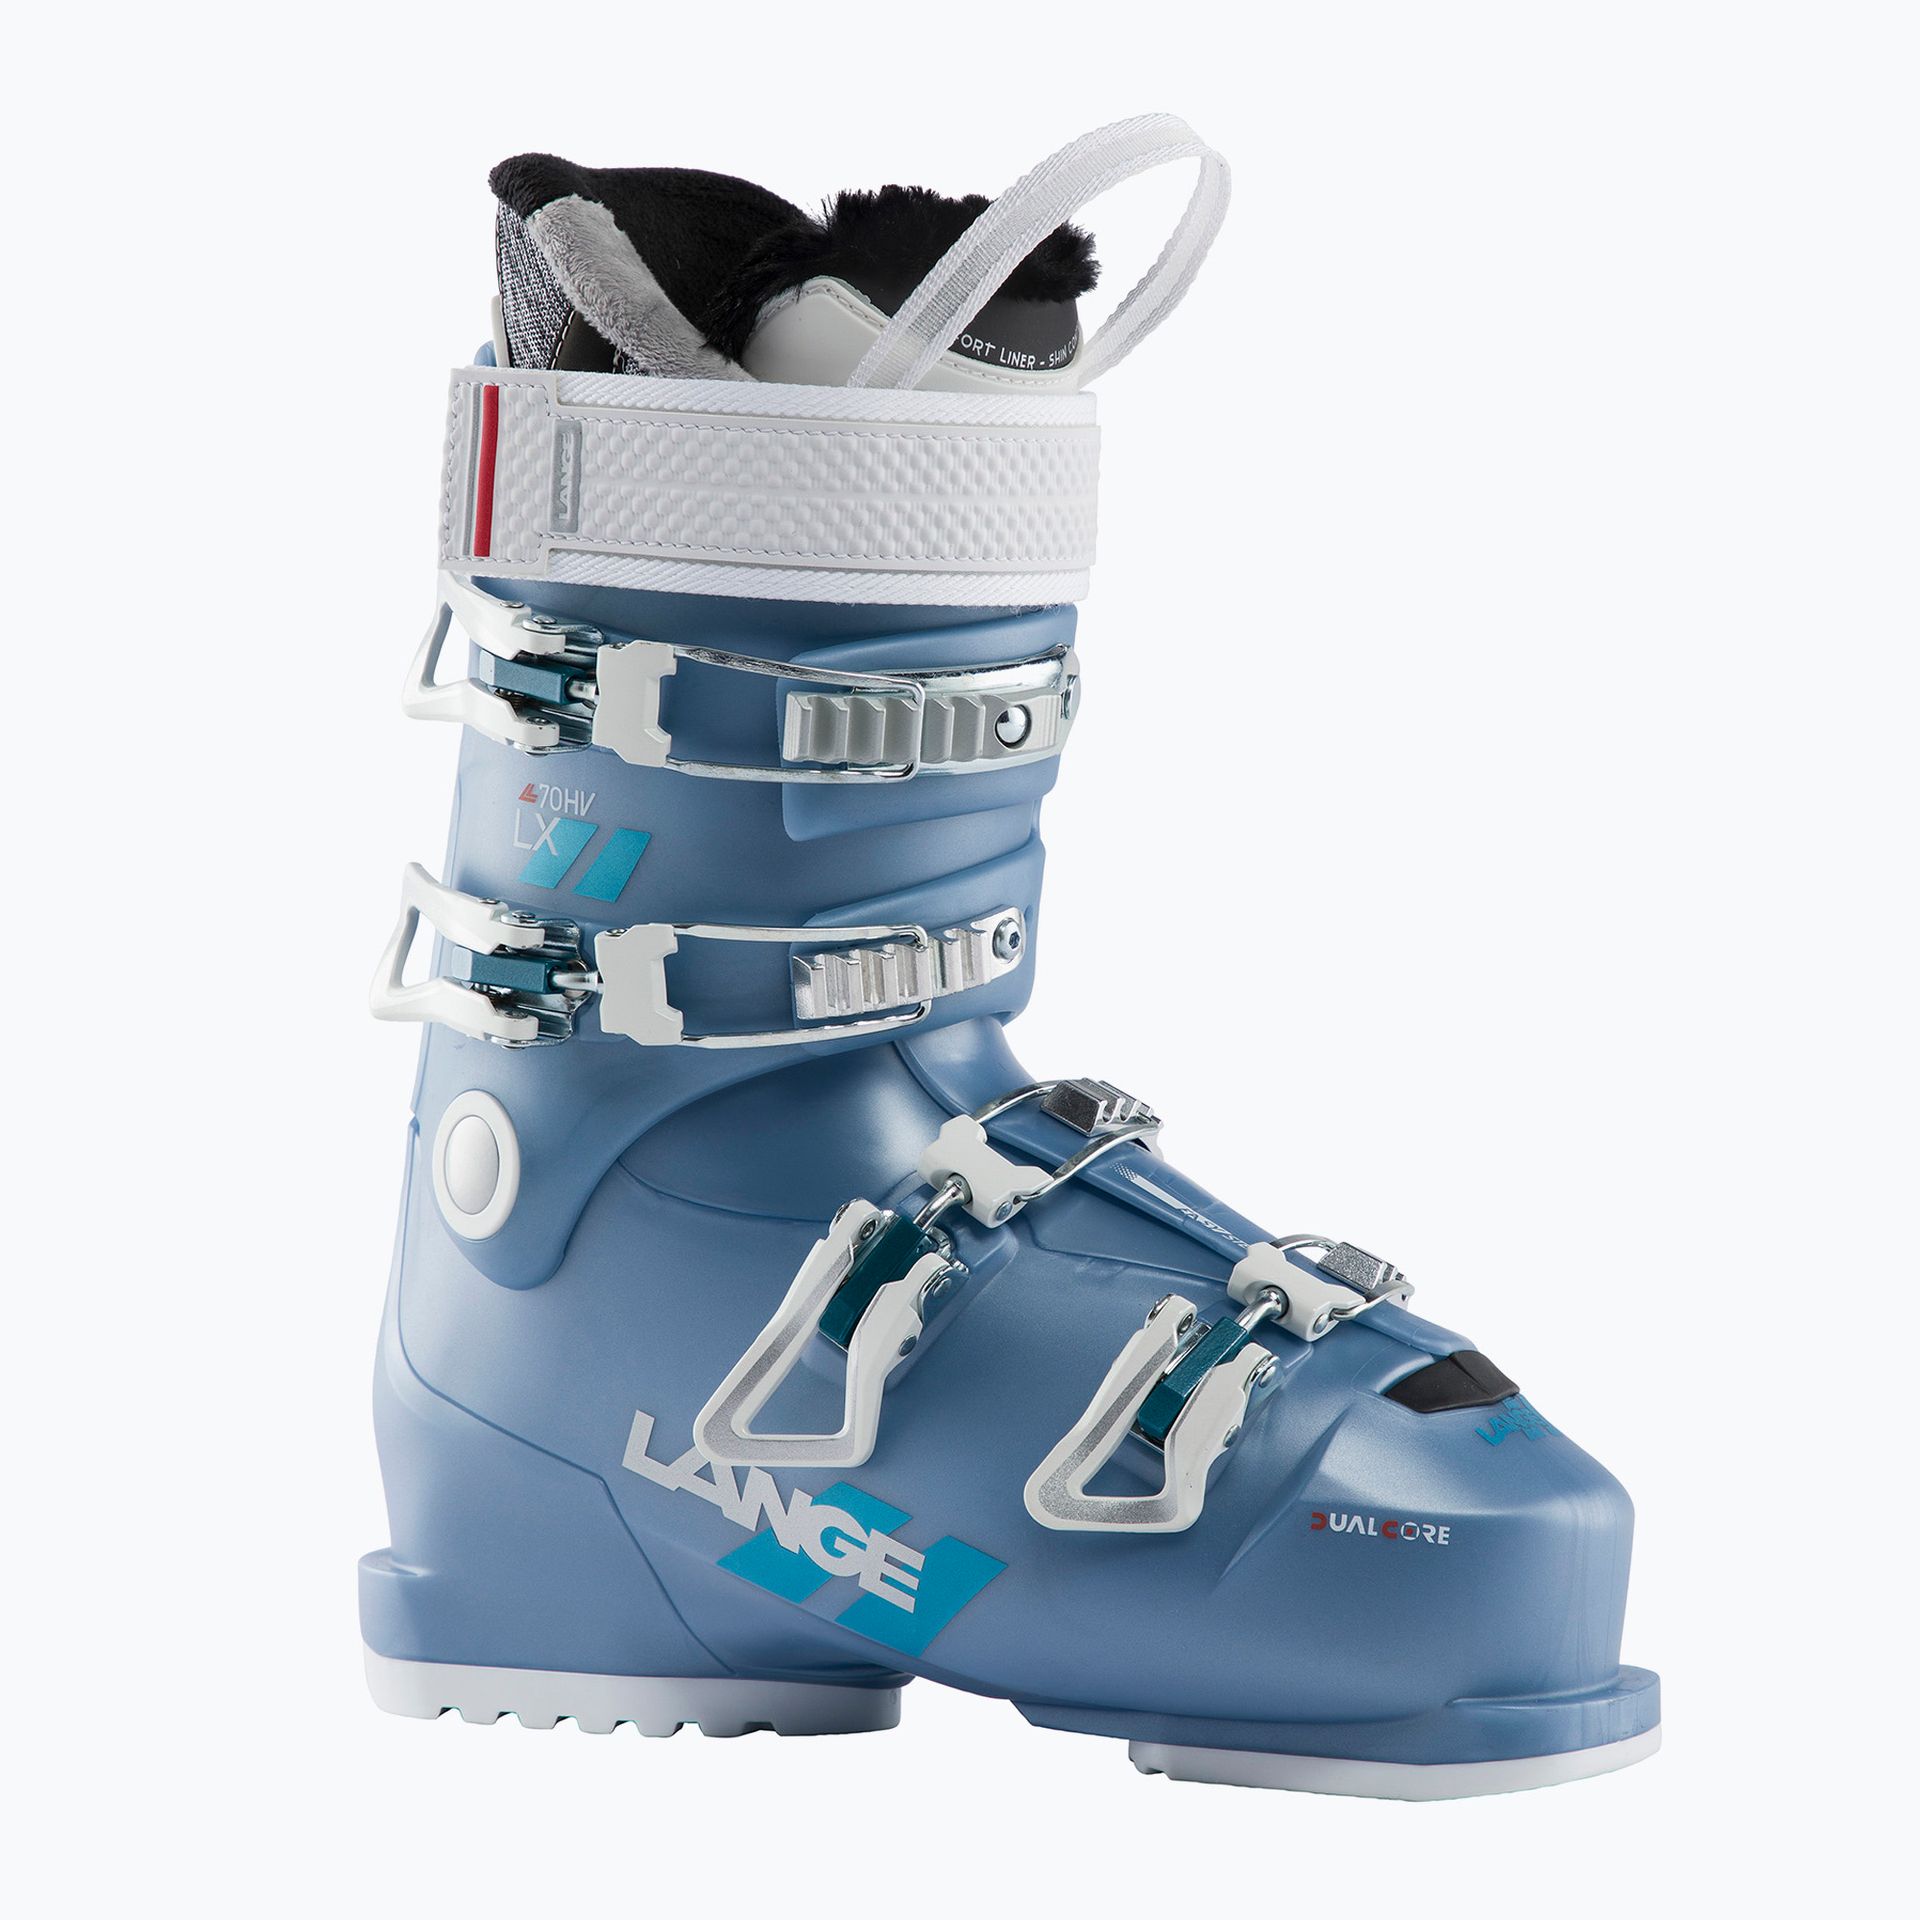 Buty narciarskie damskie Lange LX 70 W HV niebieskie LBL6260-235  24.5 cm